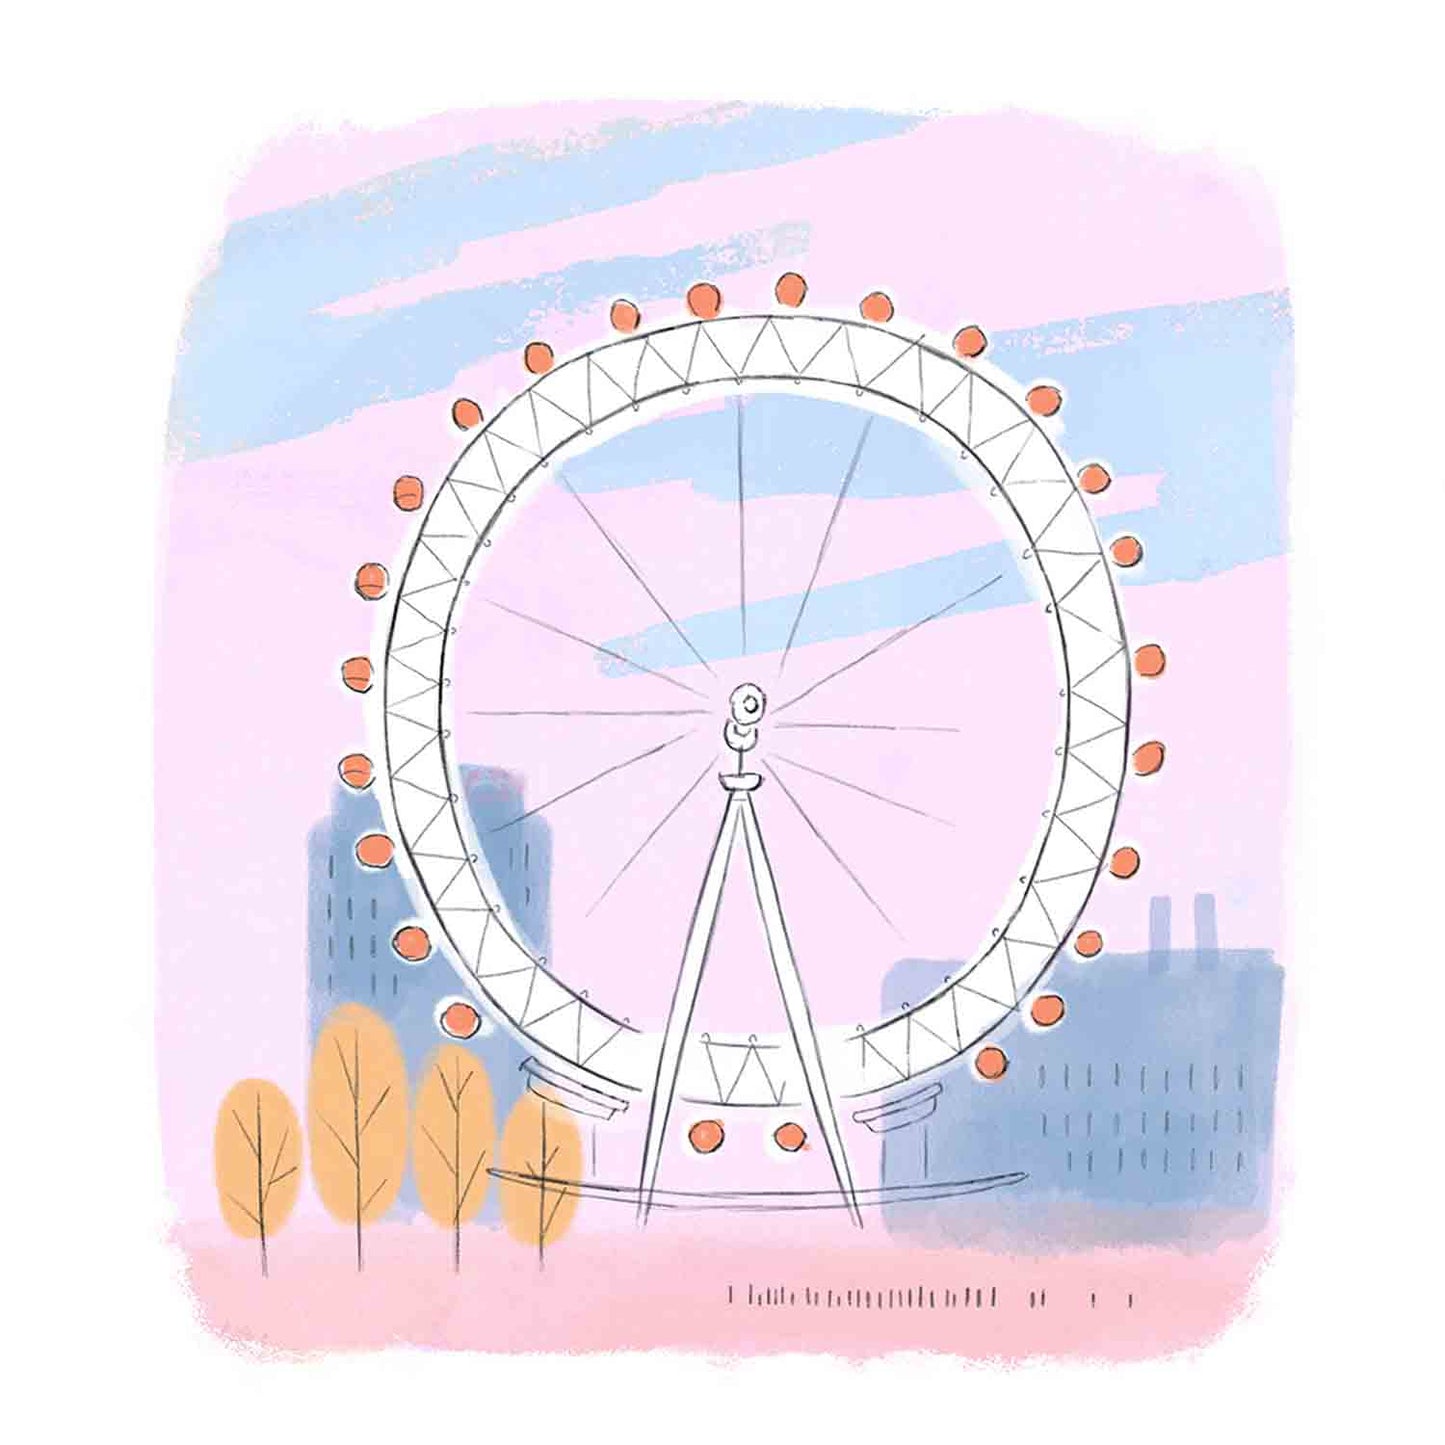 Detail from the London Eye landmark illustration Mike Green.